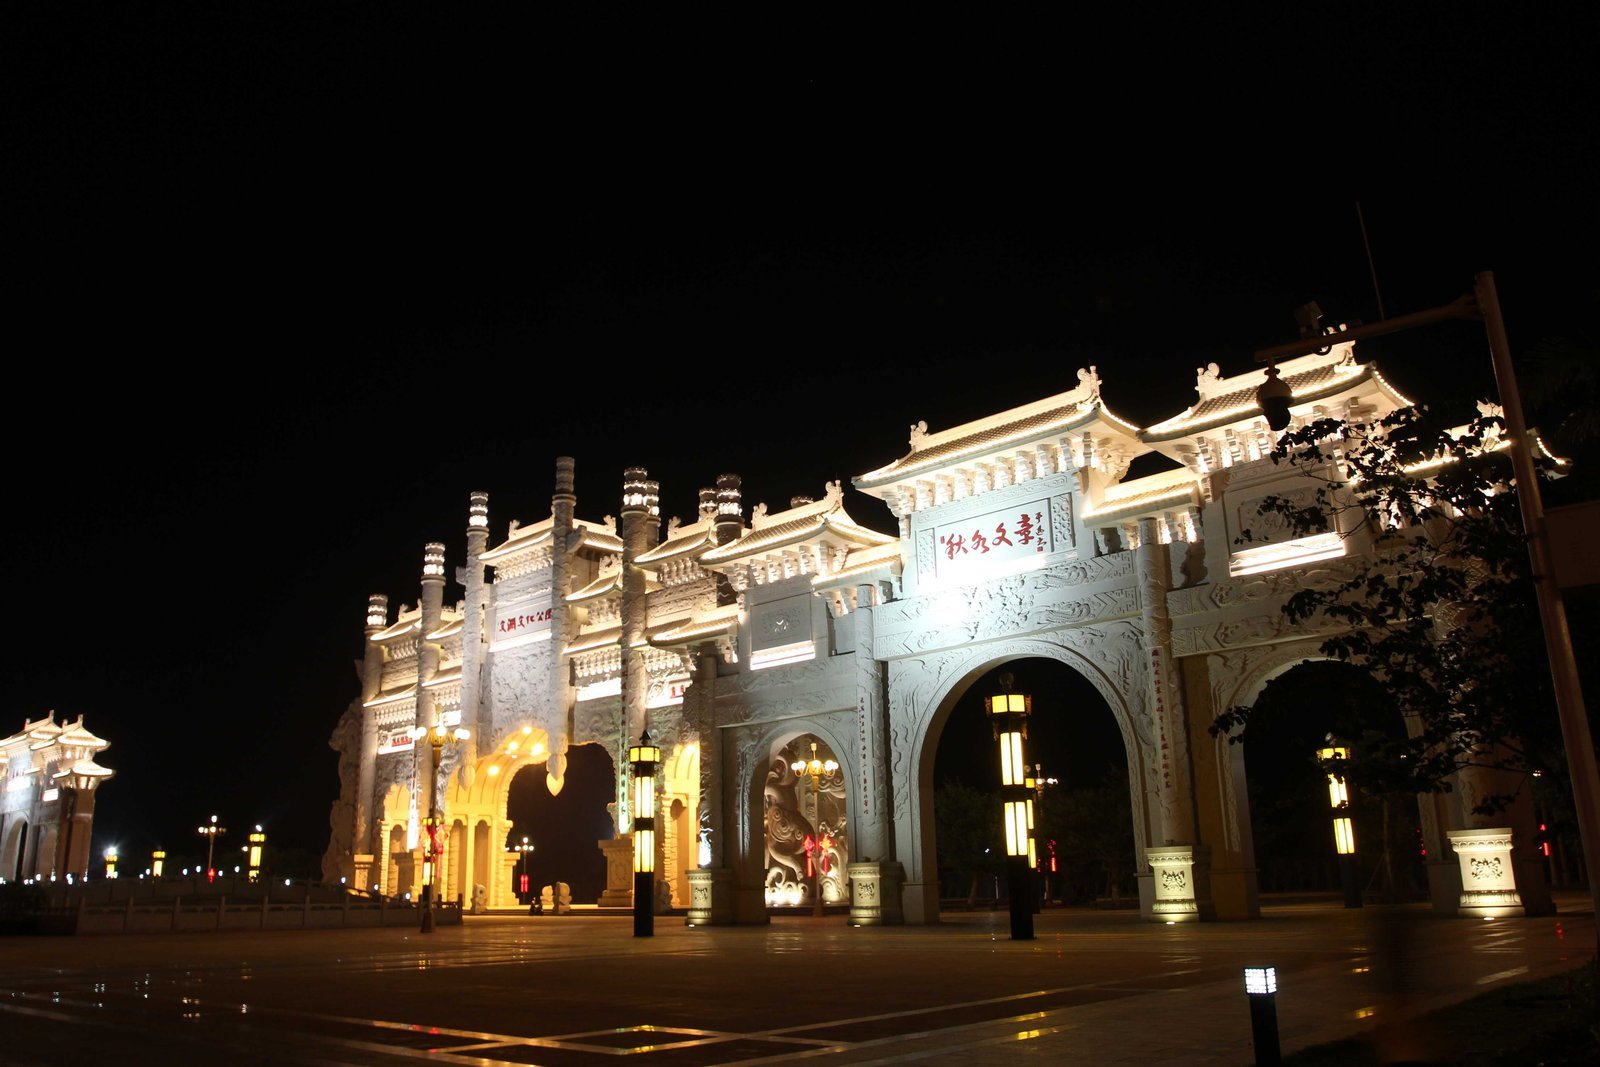 临高文澜文化公园:1.7公里长的牌坊蔚为壮观,夜